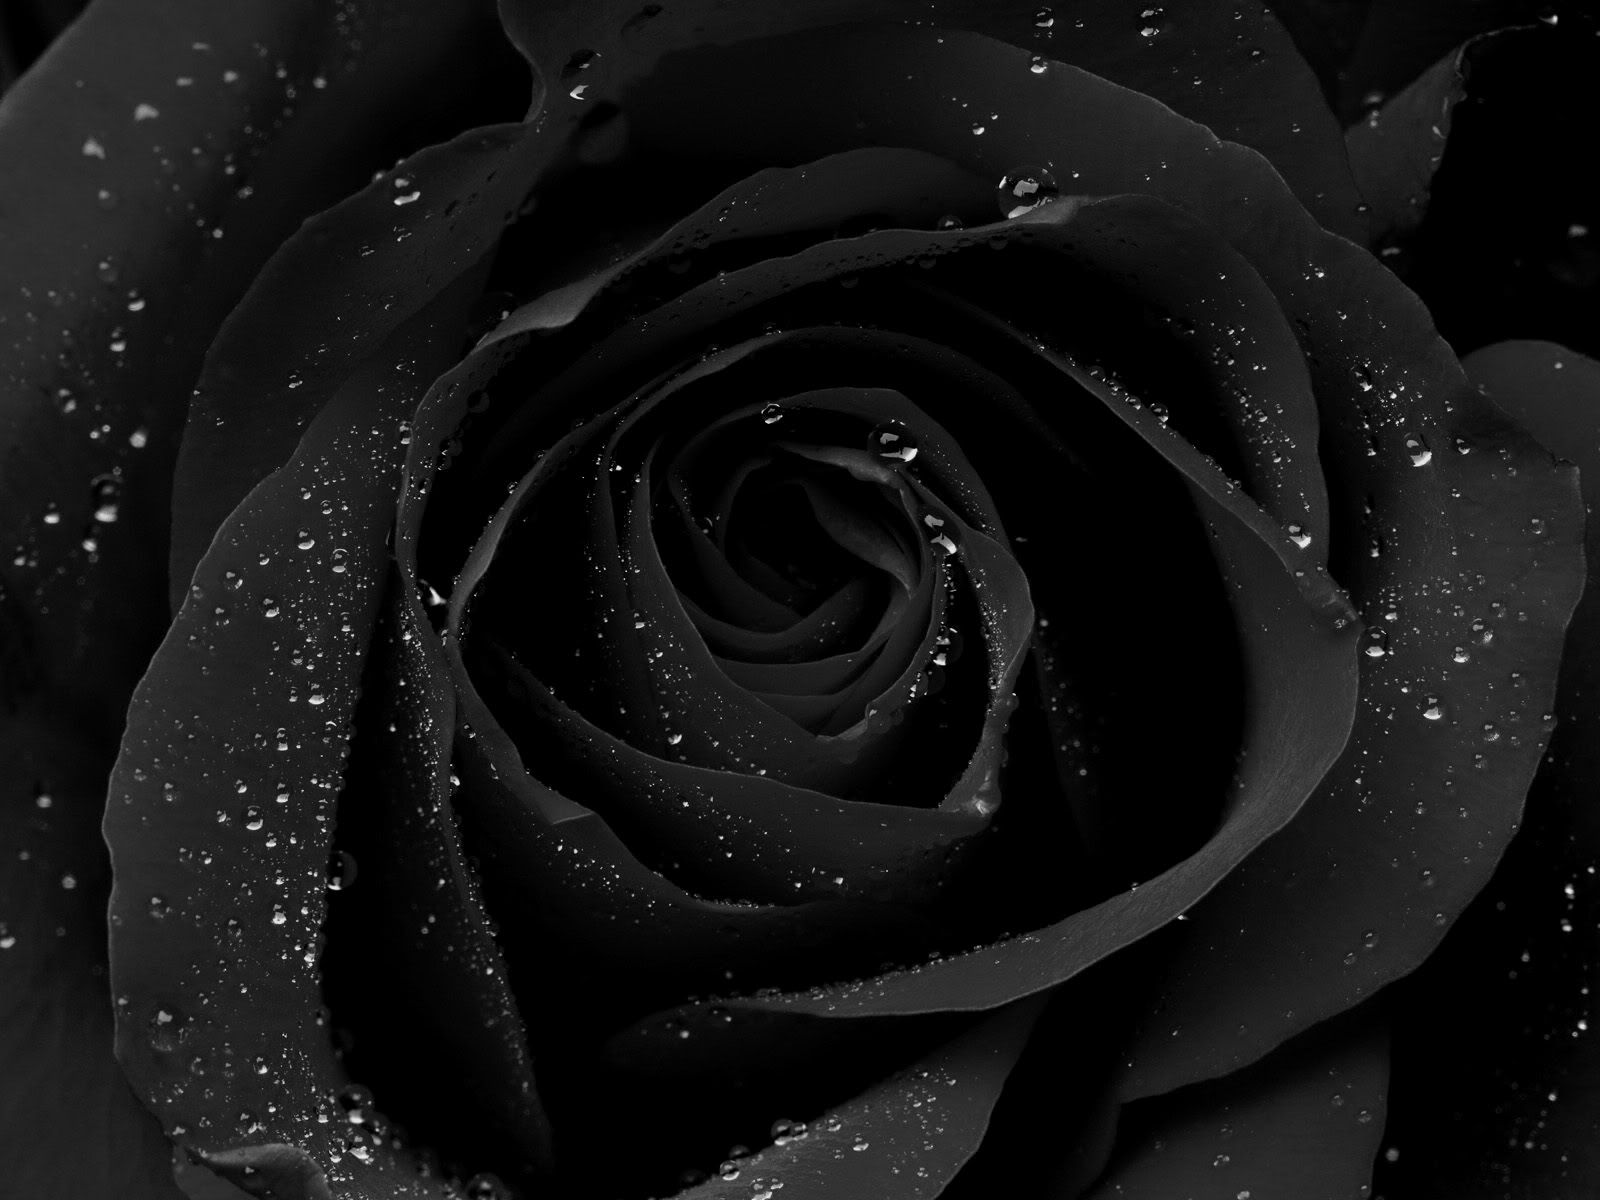 Rose On Black Background